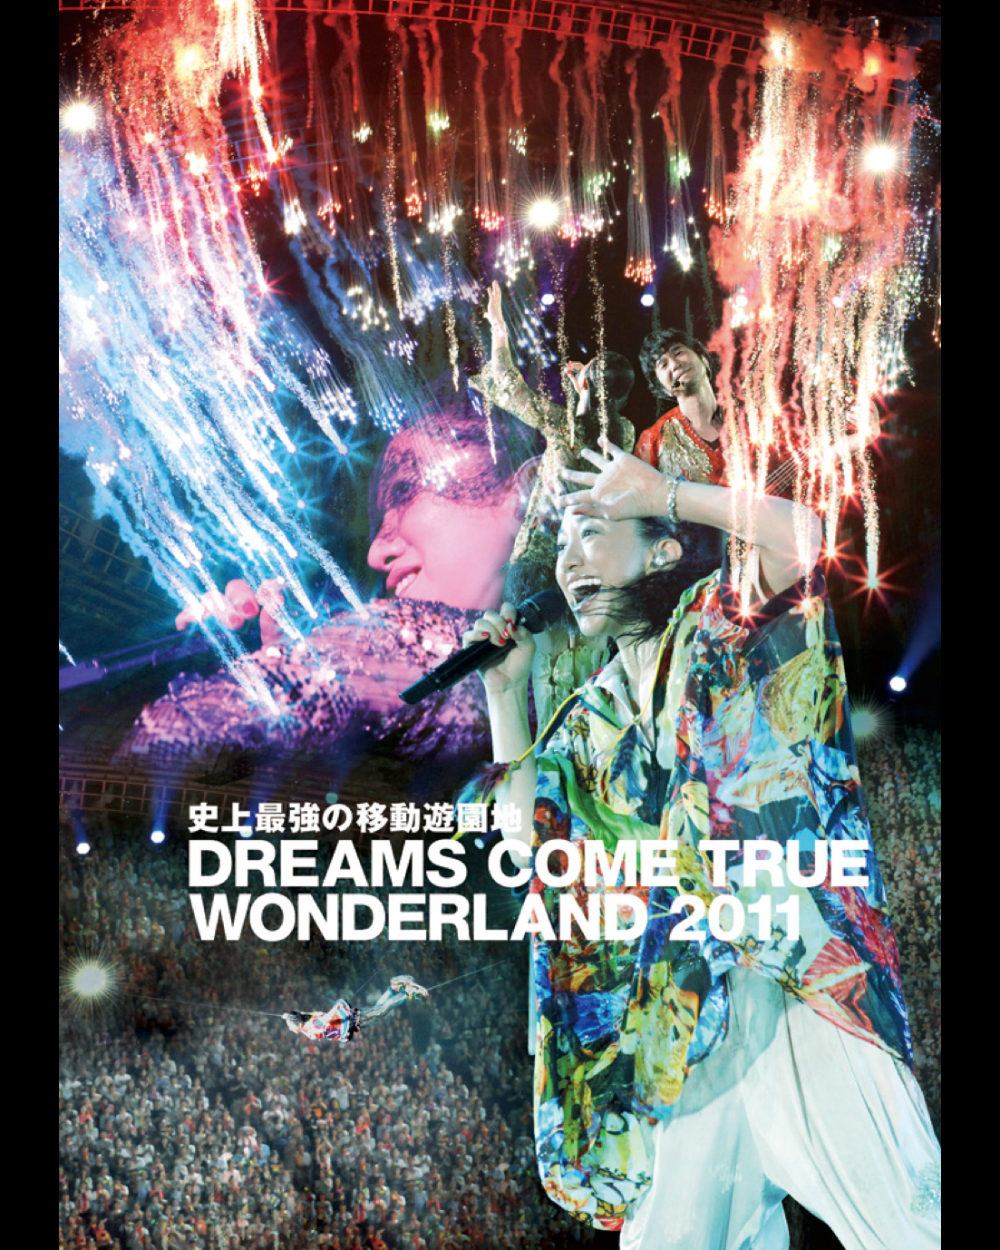 DREAMS COME TRUE【DVD】史上最強の移動遊園地 DREAMS COME TRUE WONDERLAND 2011 (通常盤)